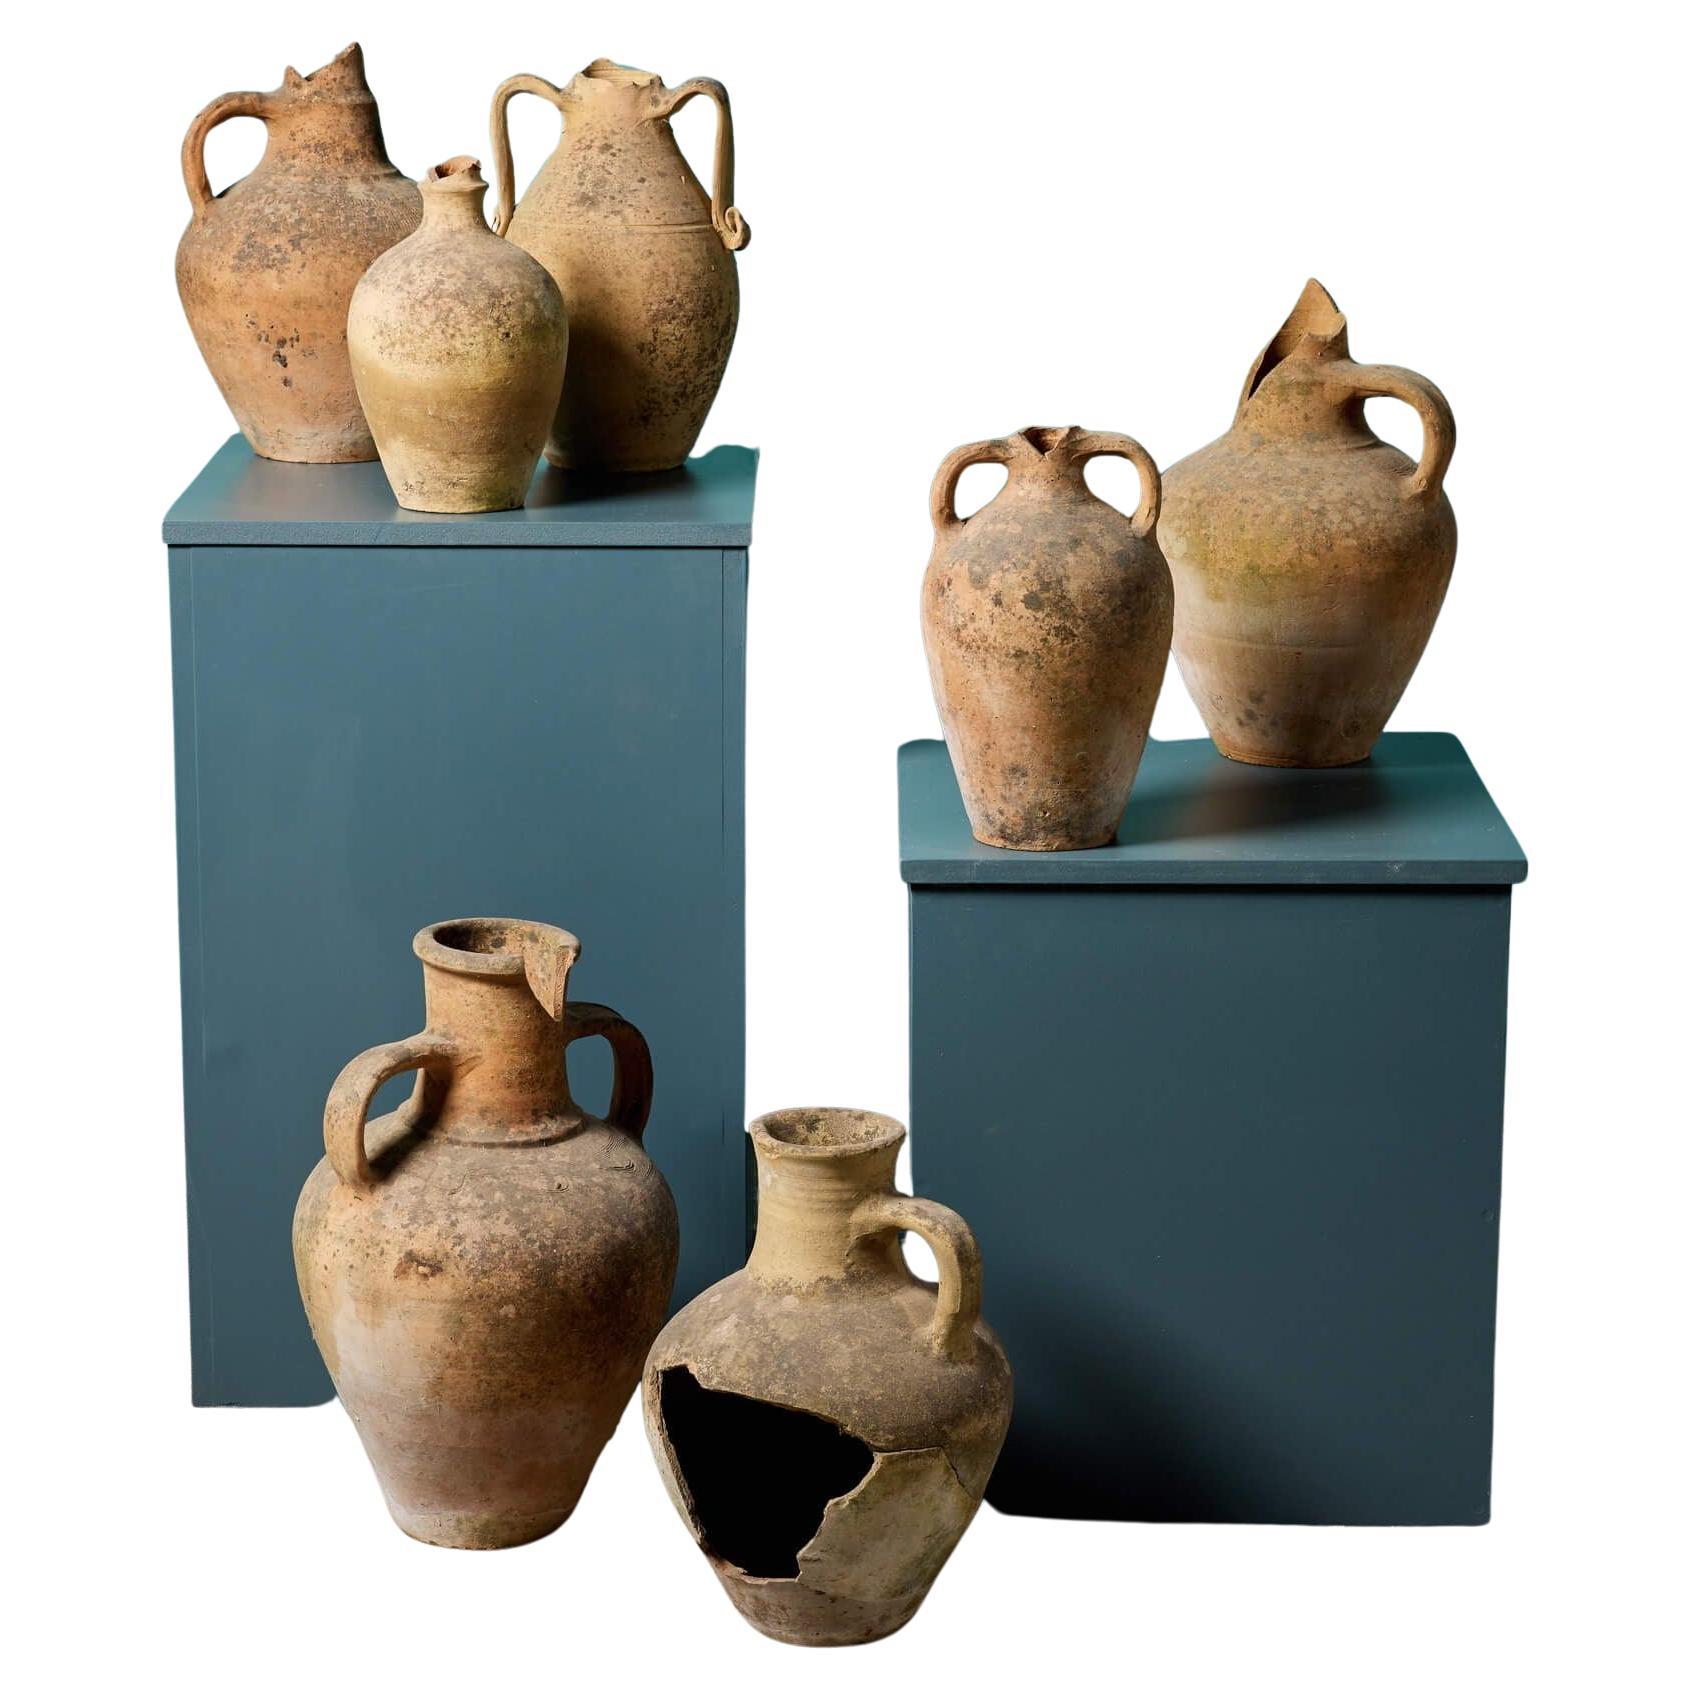 Kollektion von sieben mediterranen Terrakotta-Aufbewahrungsgefäßen aus Terrakotta